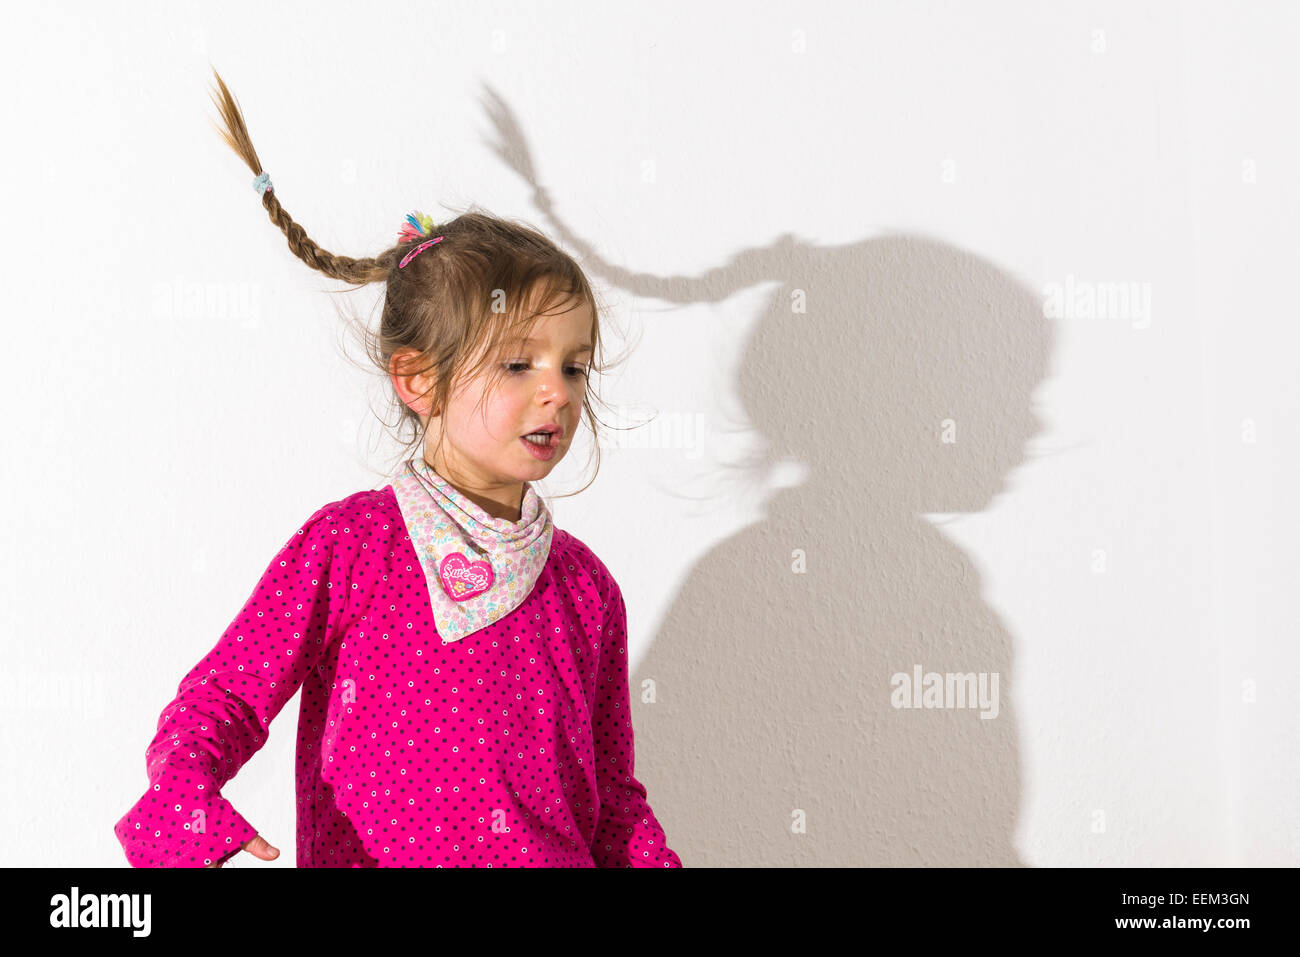 Fille, 3 ans, vêtu d'un chandail rose, danse, jette une ombre sur un mur blanc Banque D'Images